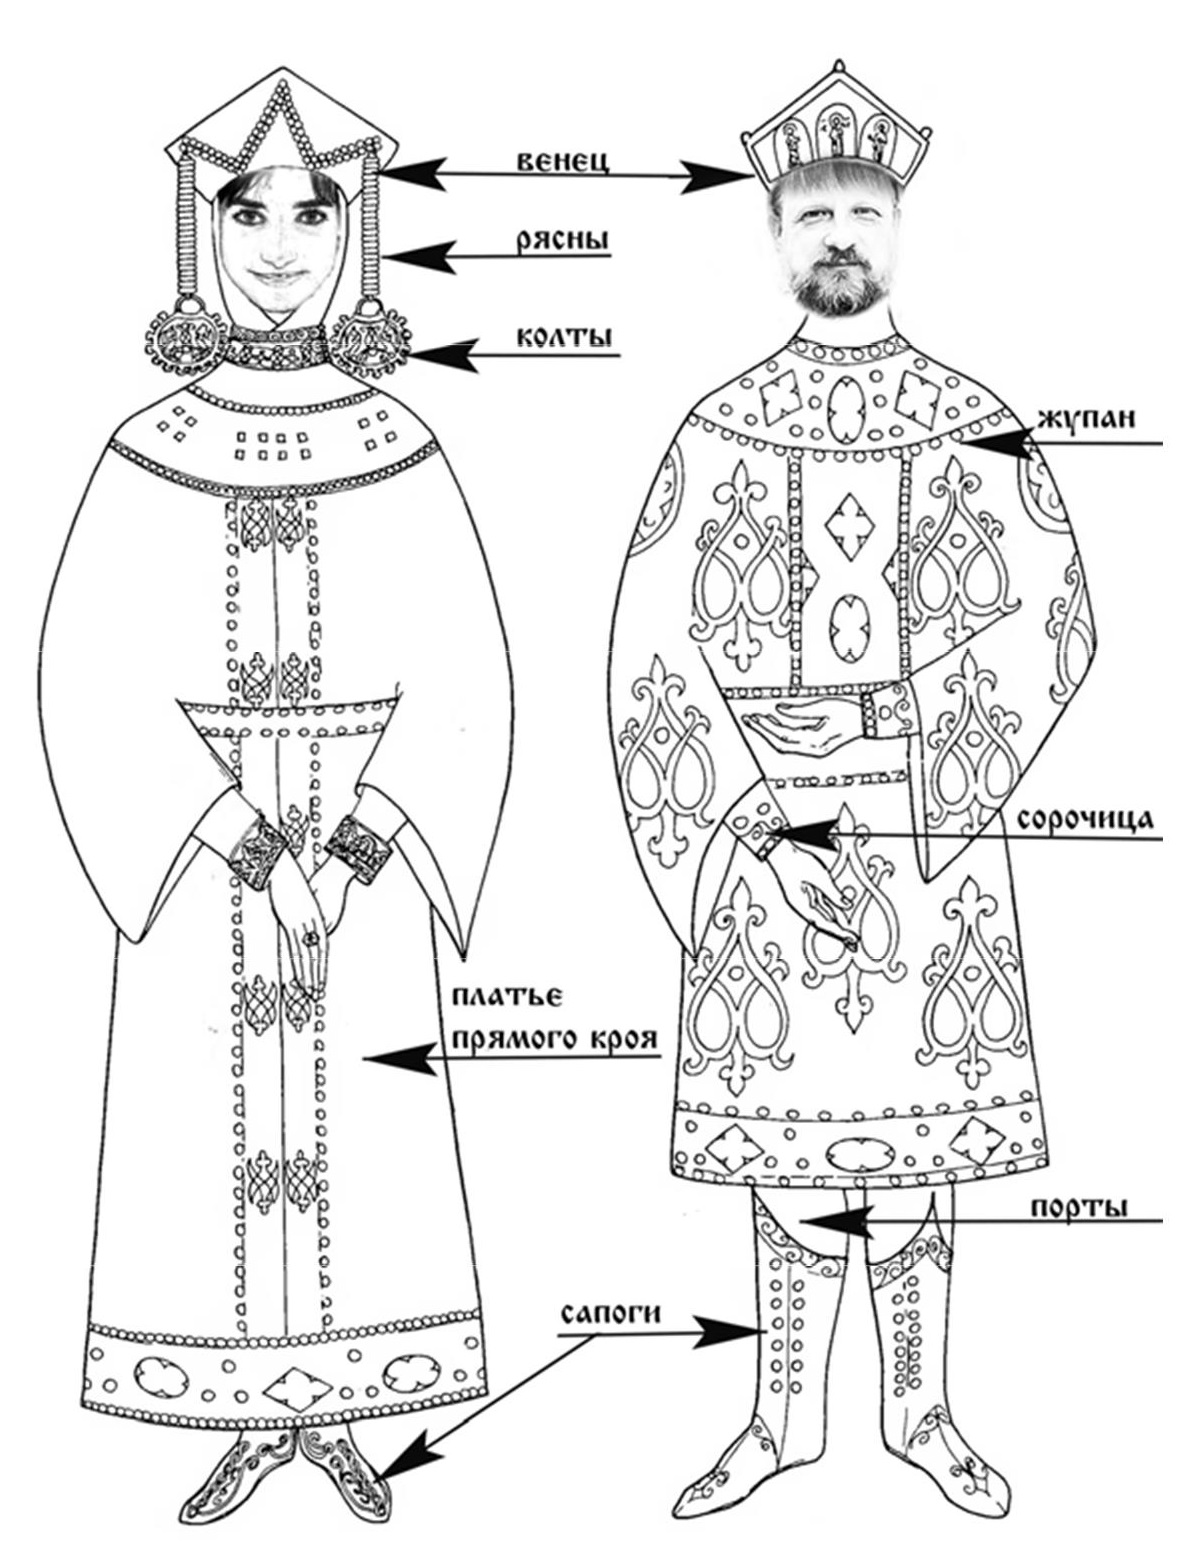 Великокняжеский костюм древней Руси